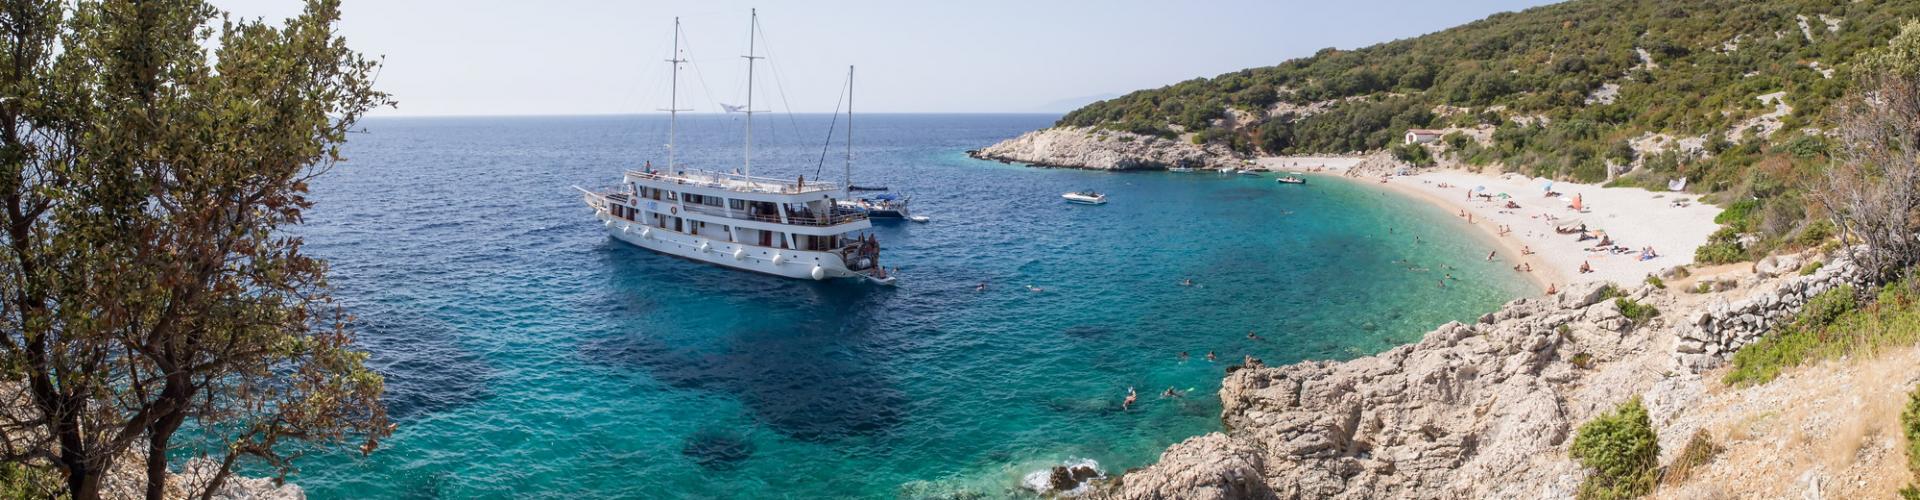 2011. Premium nave da crociera MV Dalmatia